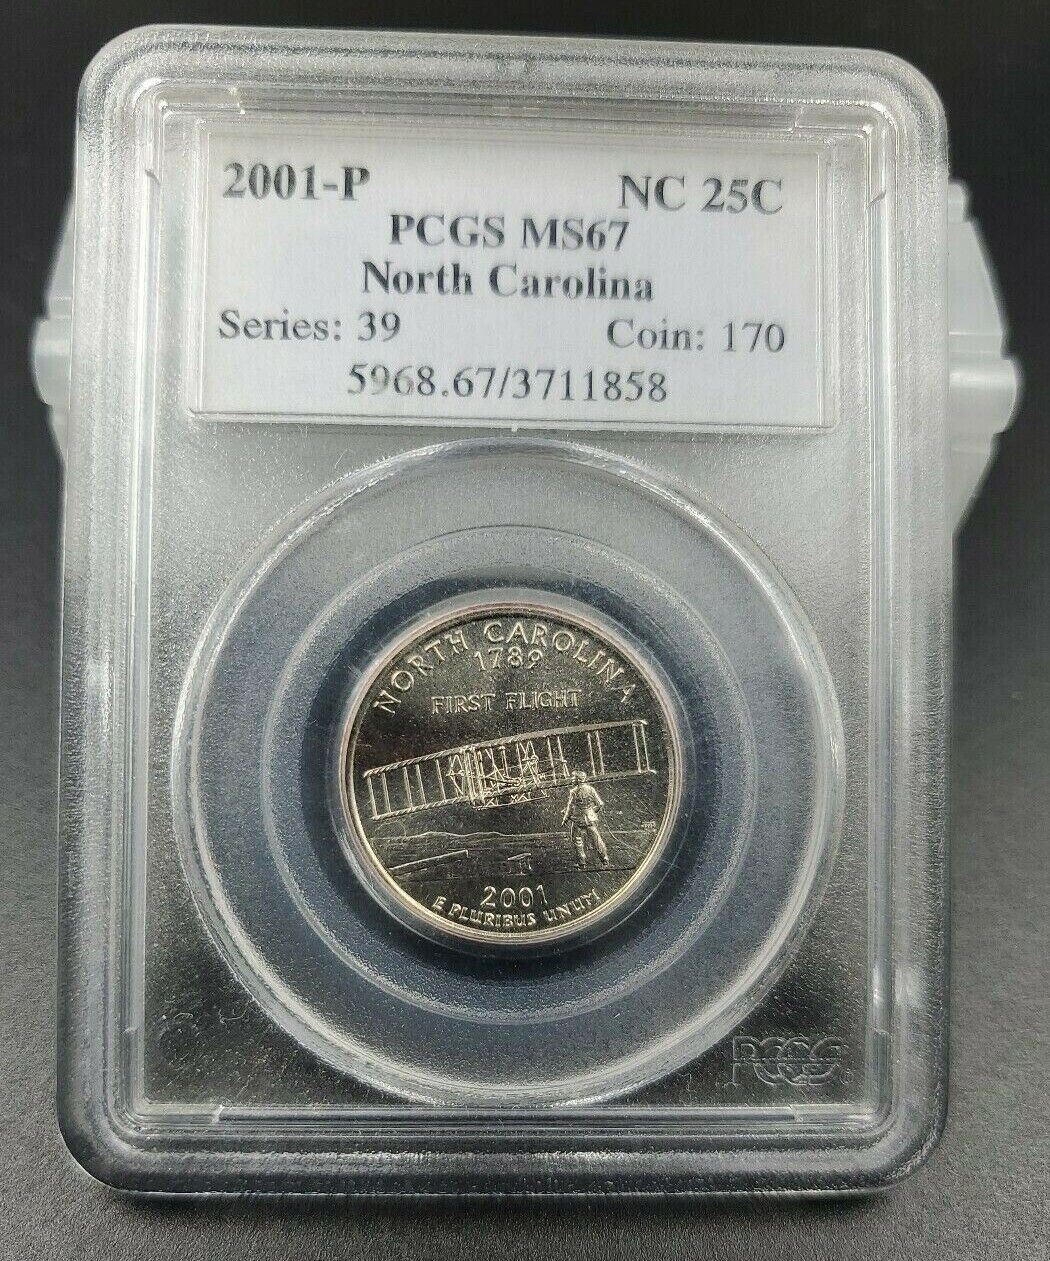 2001 P North Carolina State Quarter Coin PCGS MS67 Gem BU Uncirculated